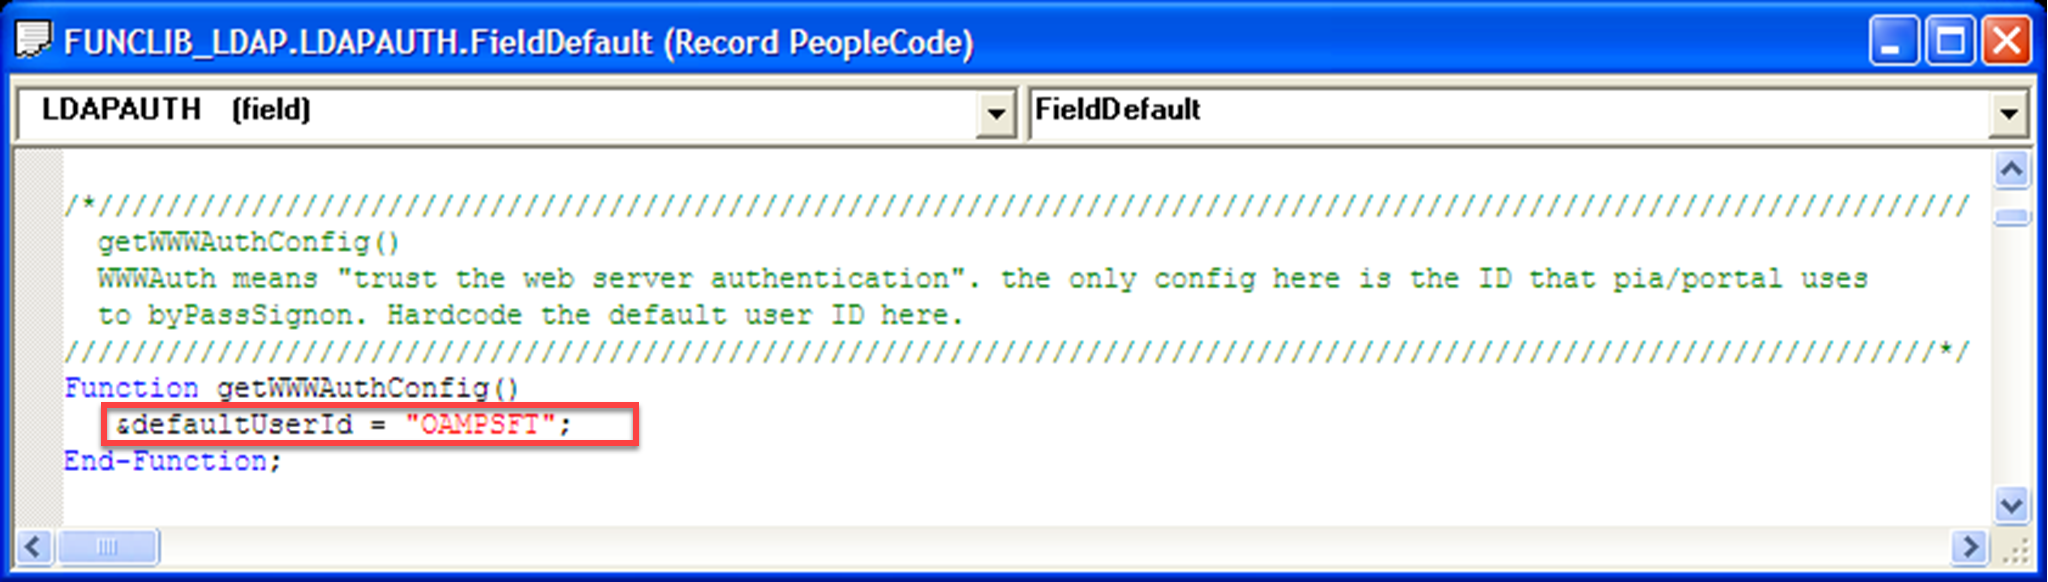 Képernyőkép az alapértelmezett felhasználói azonosító értékéről, amely az OAMPSFT értékkel egyenlő a függvény alatt.